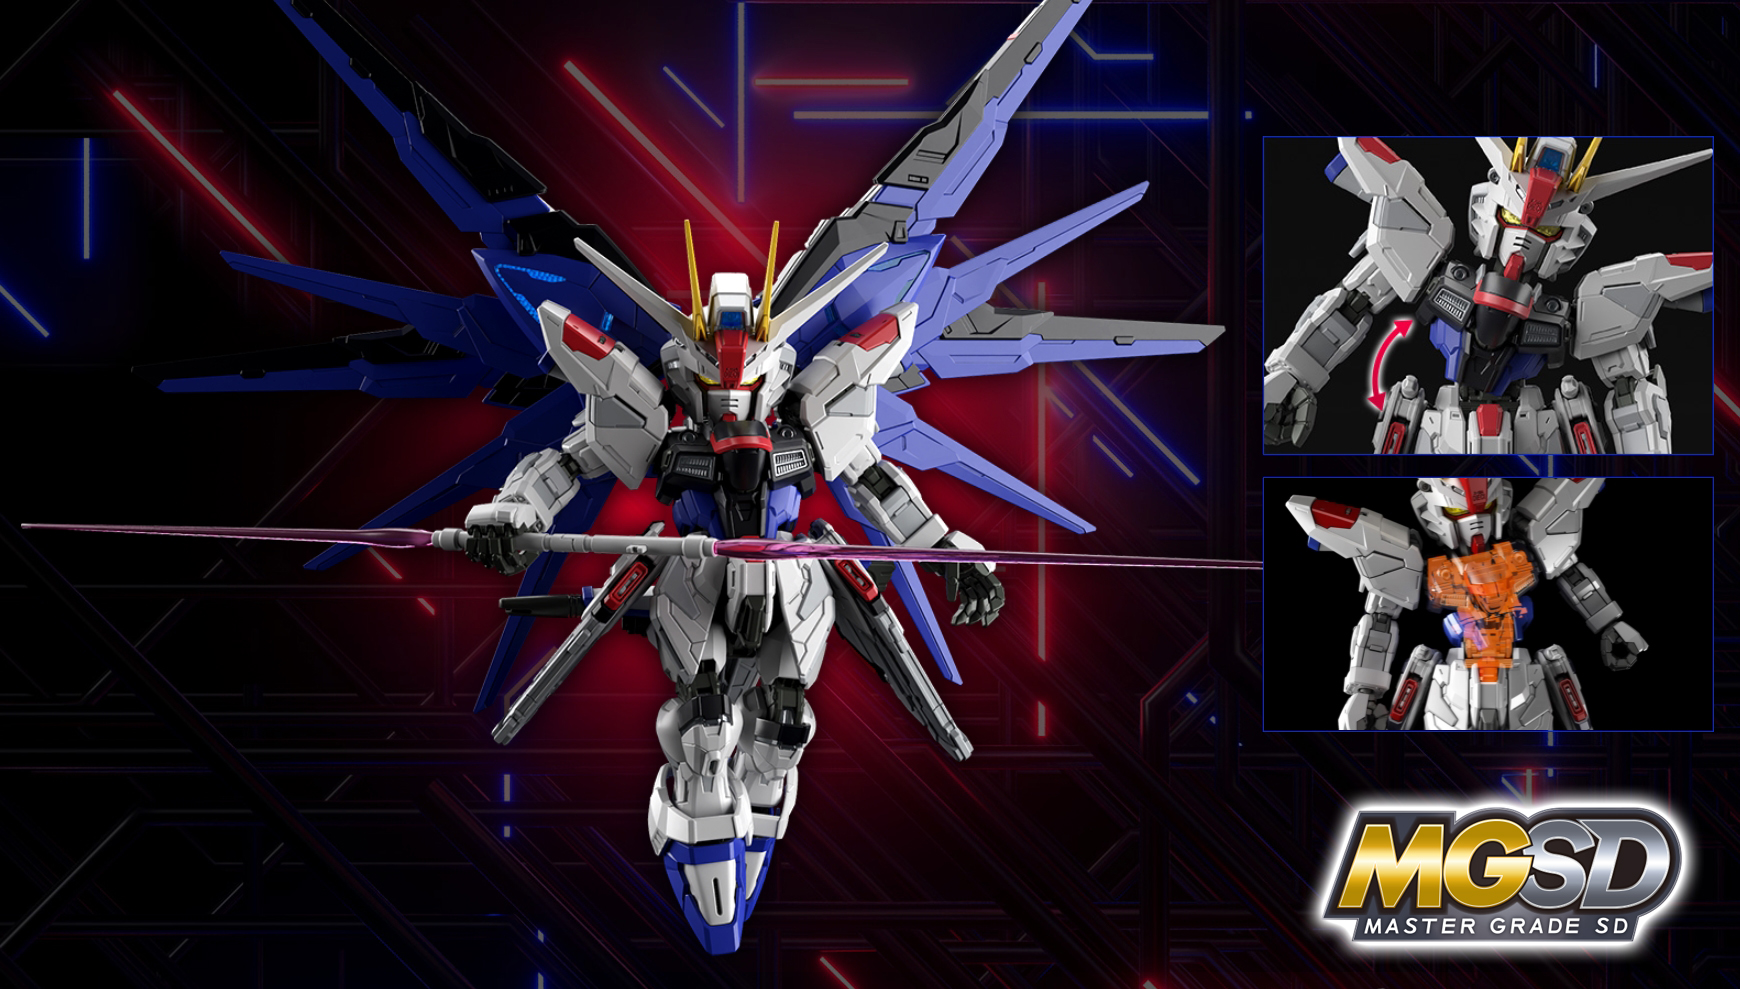 MGSD Freedom Gundam - Release Info